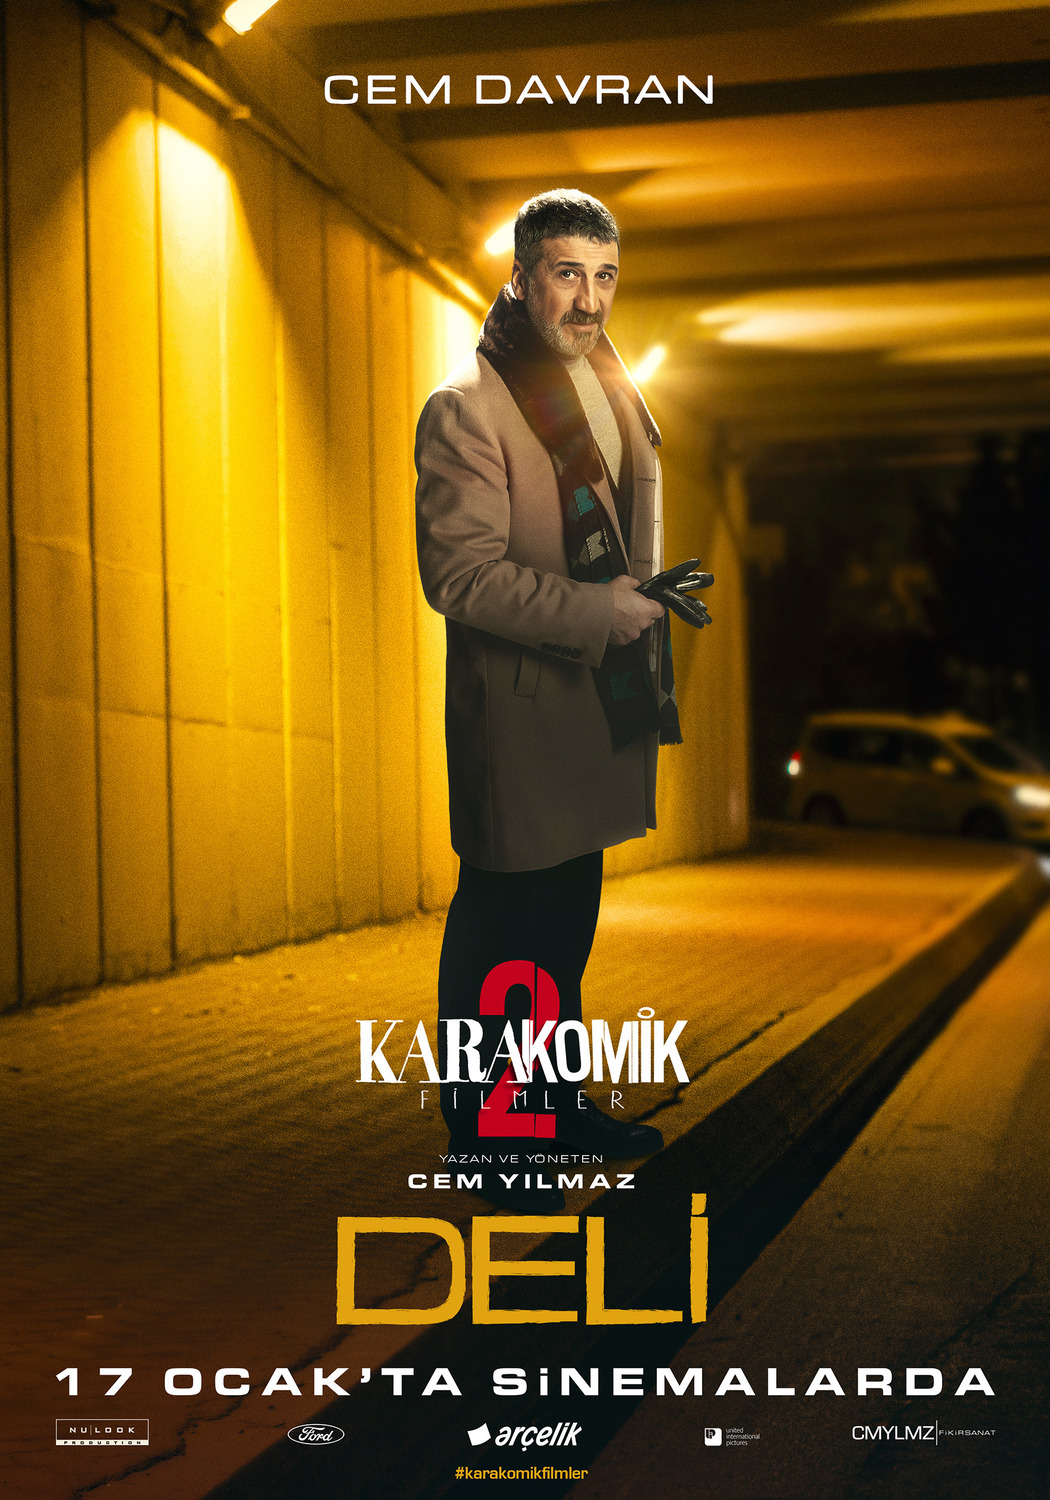 Extra Large Movie Poster Image for Karakomik Filmler: Deli (#3 of 6)